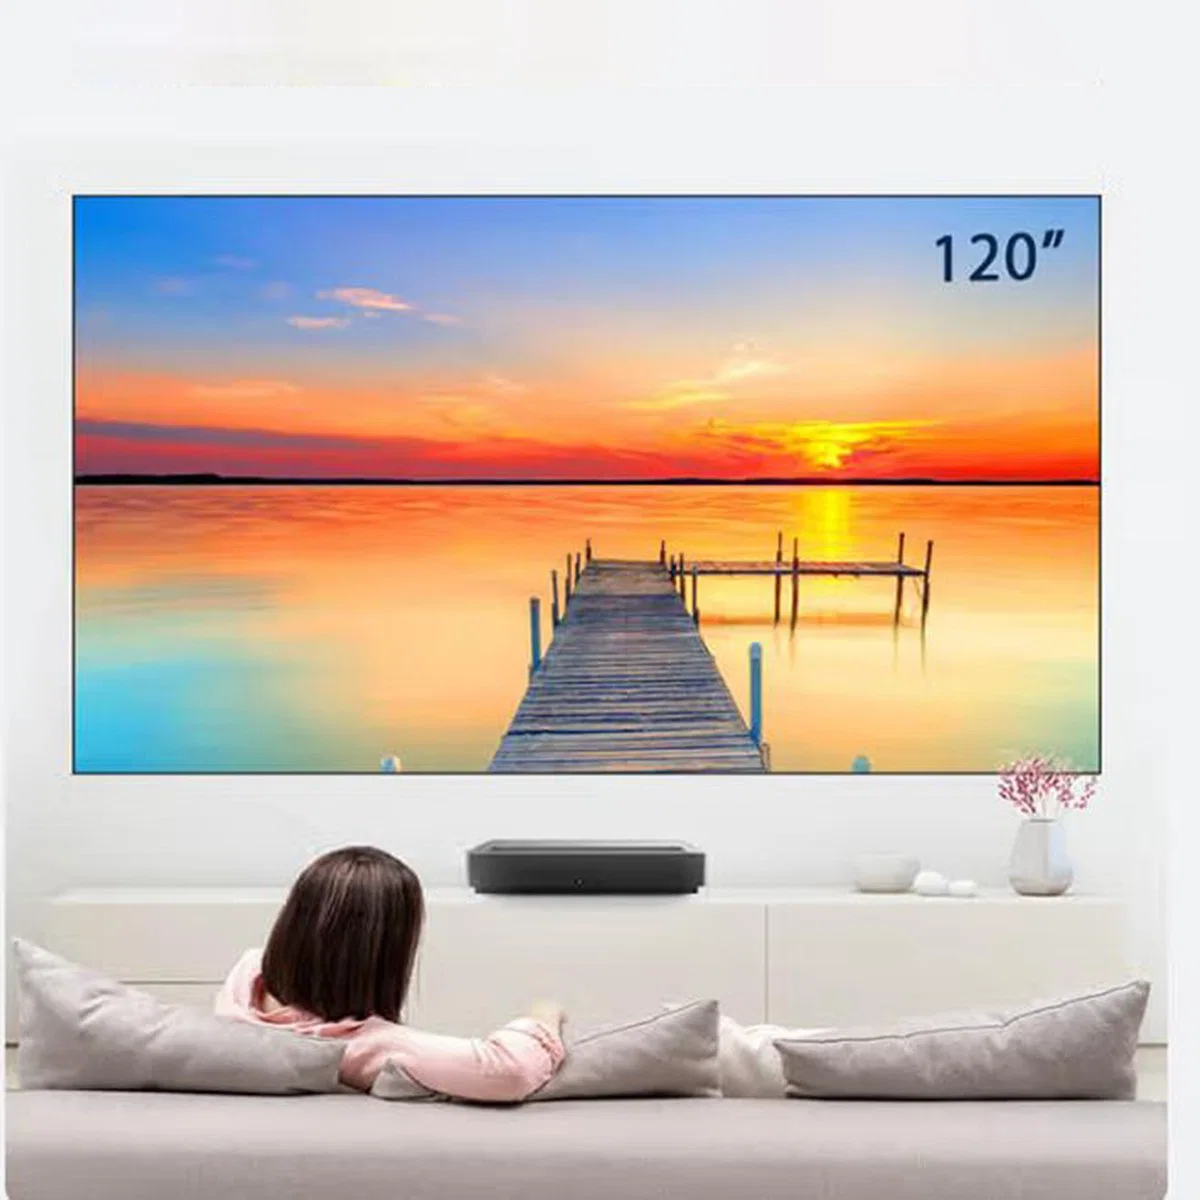 شاشة عرض Fscreen بحجم 120 بوصة مصممة بتقنية الفرينيل لرفض الضوء المحيط لشاشة العرض المنزلية وشاشة التلفزيون بالليزر في ضوء النهار وشاشة العرض ثلاثية الأبعاد بدقة 4K.